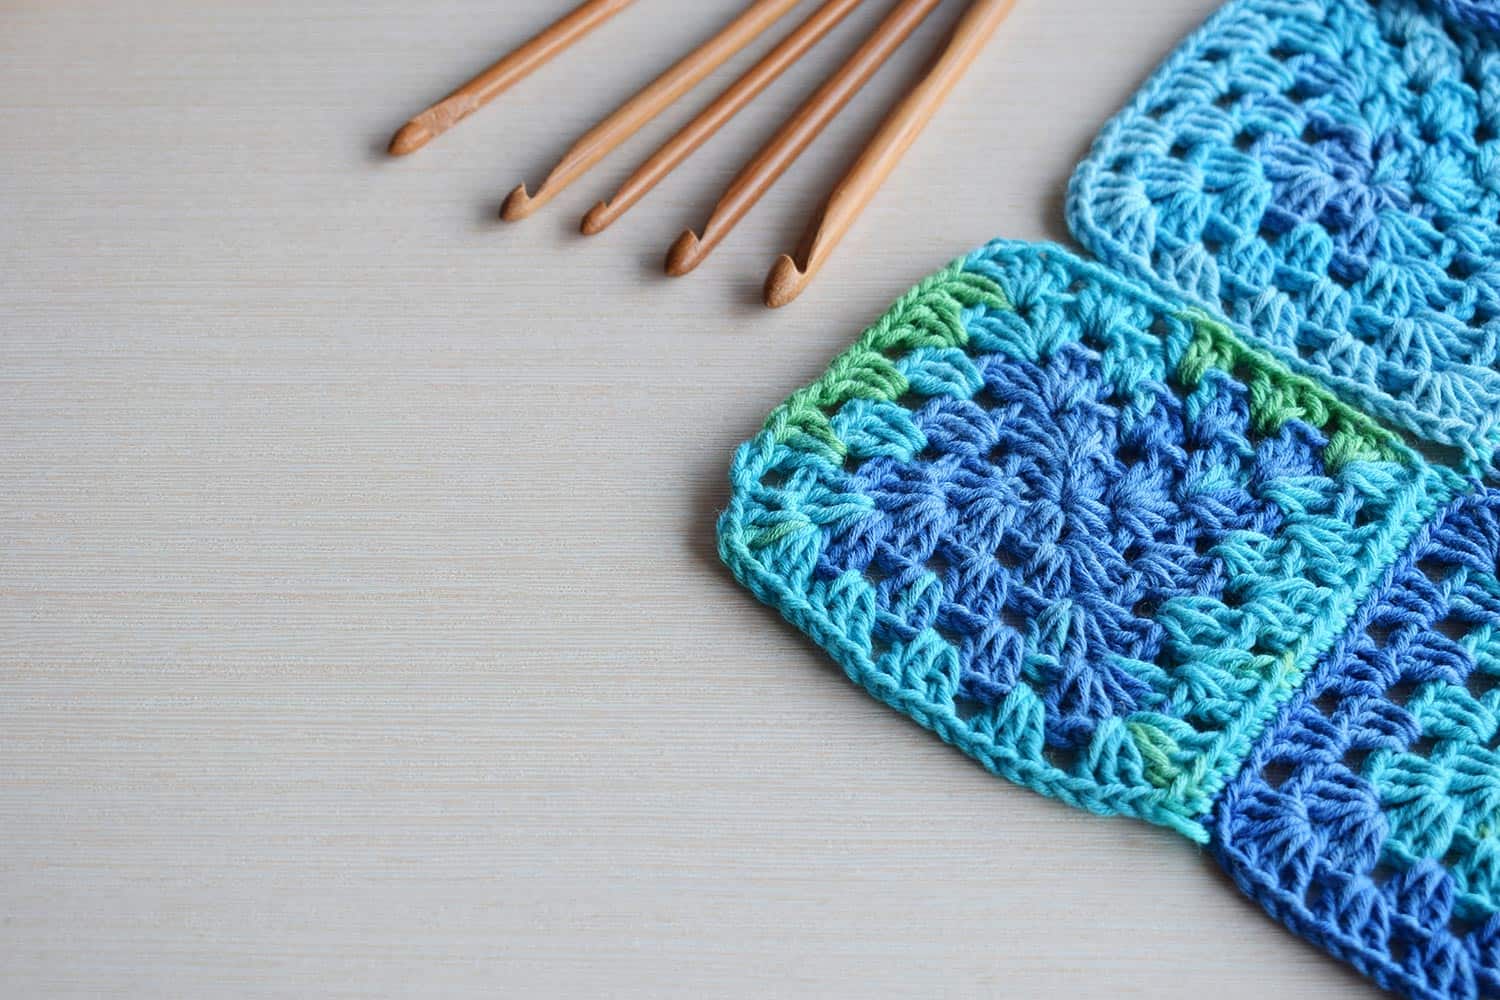 Equipment for knitting and crochet hook